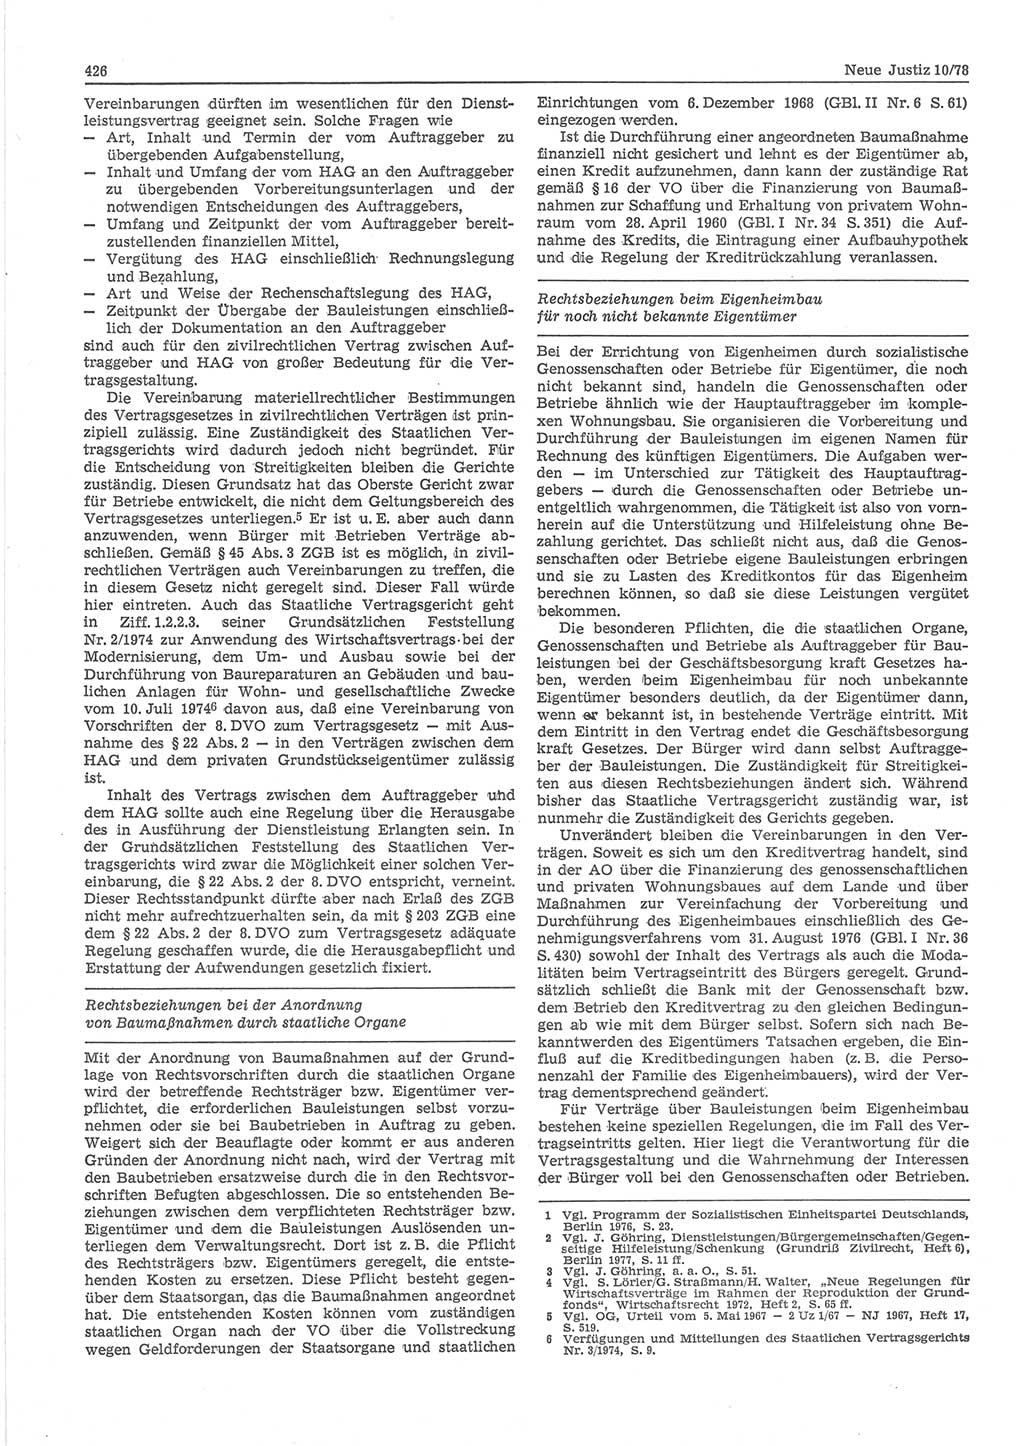 Neue Justiz (NJ), Zeitschrift für sozialistisches Recht und Gesetzlichkeit [Deutsche Demokratische Republik (DDR)], 32. Jahrgang 1978, Seite 426 (NJ DDR 1978, S. 426)